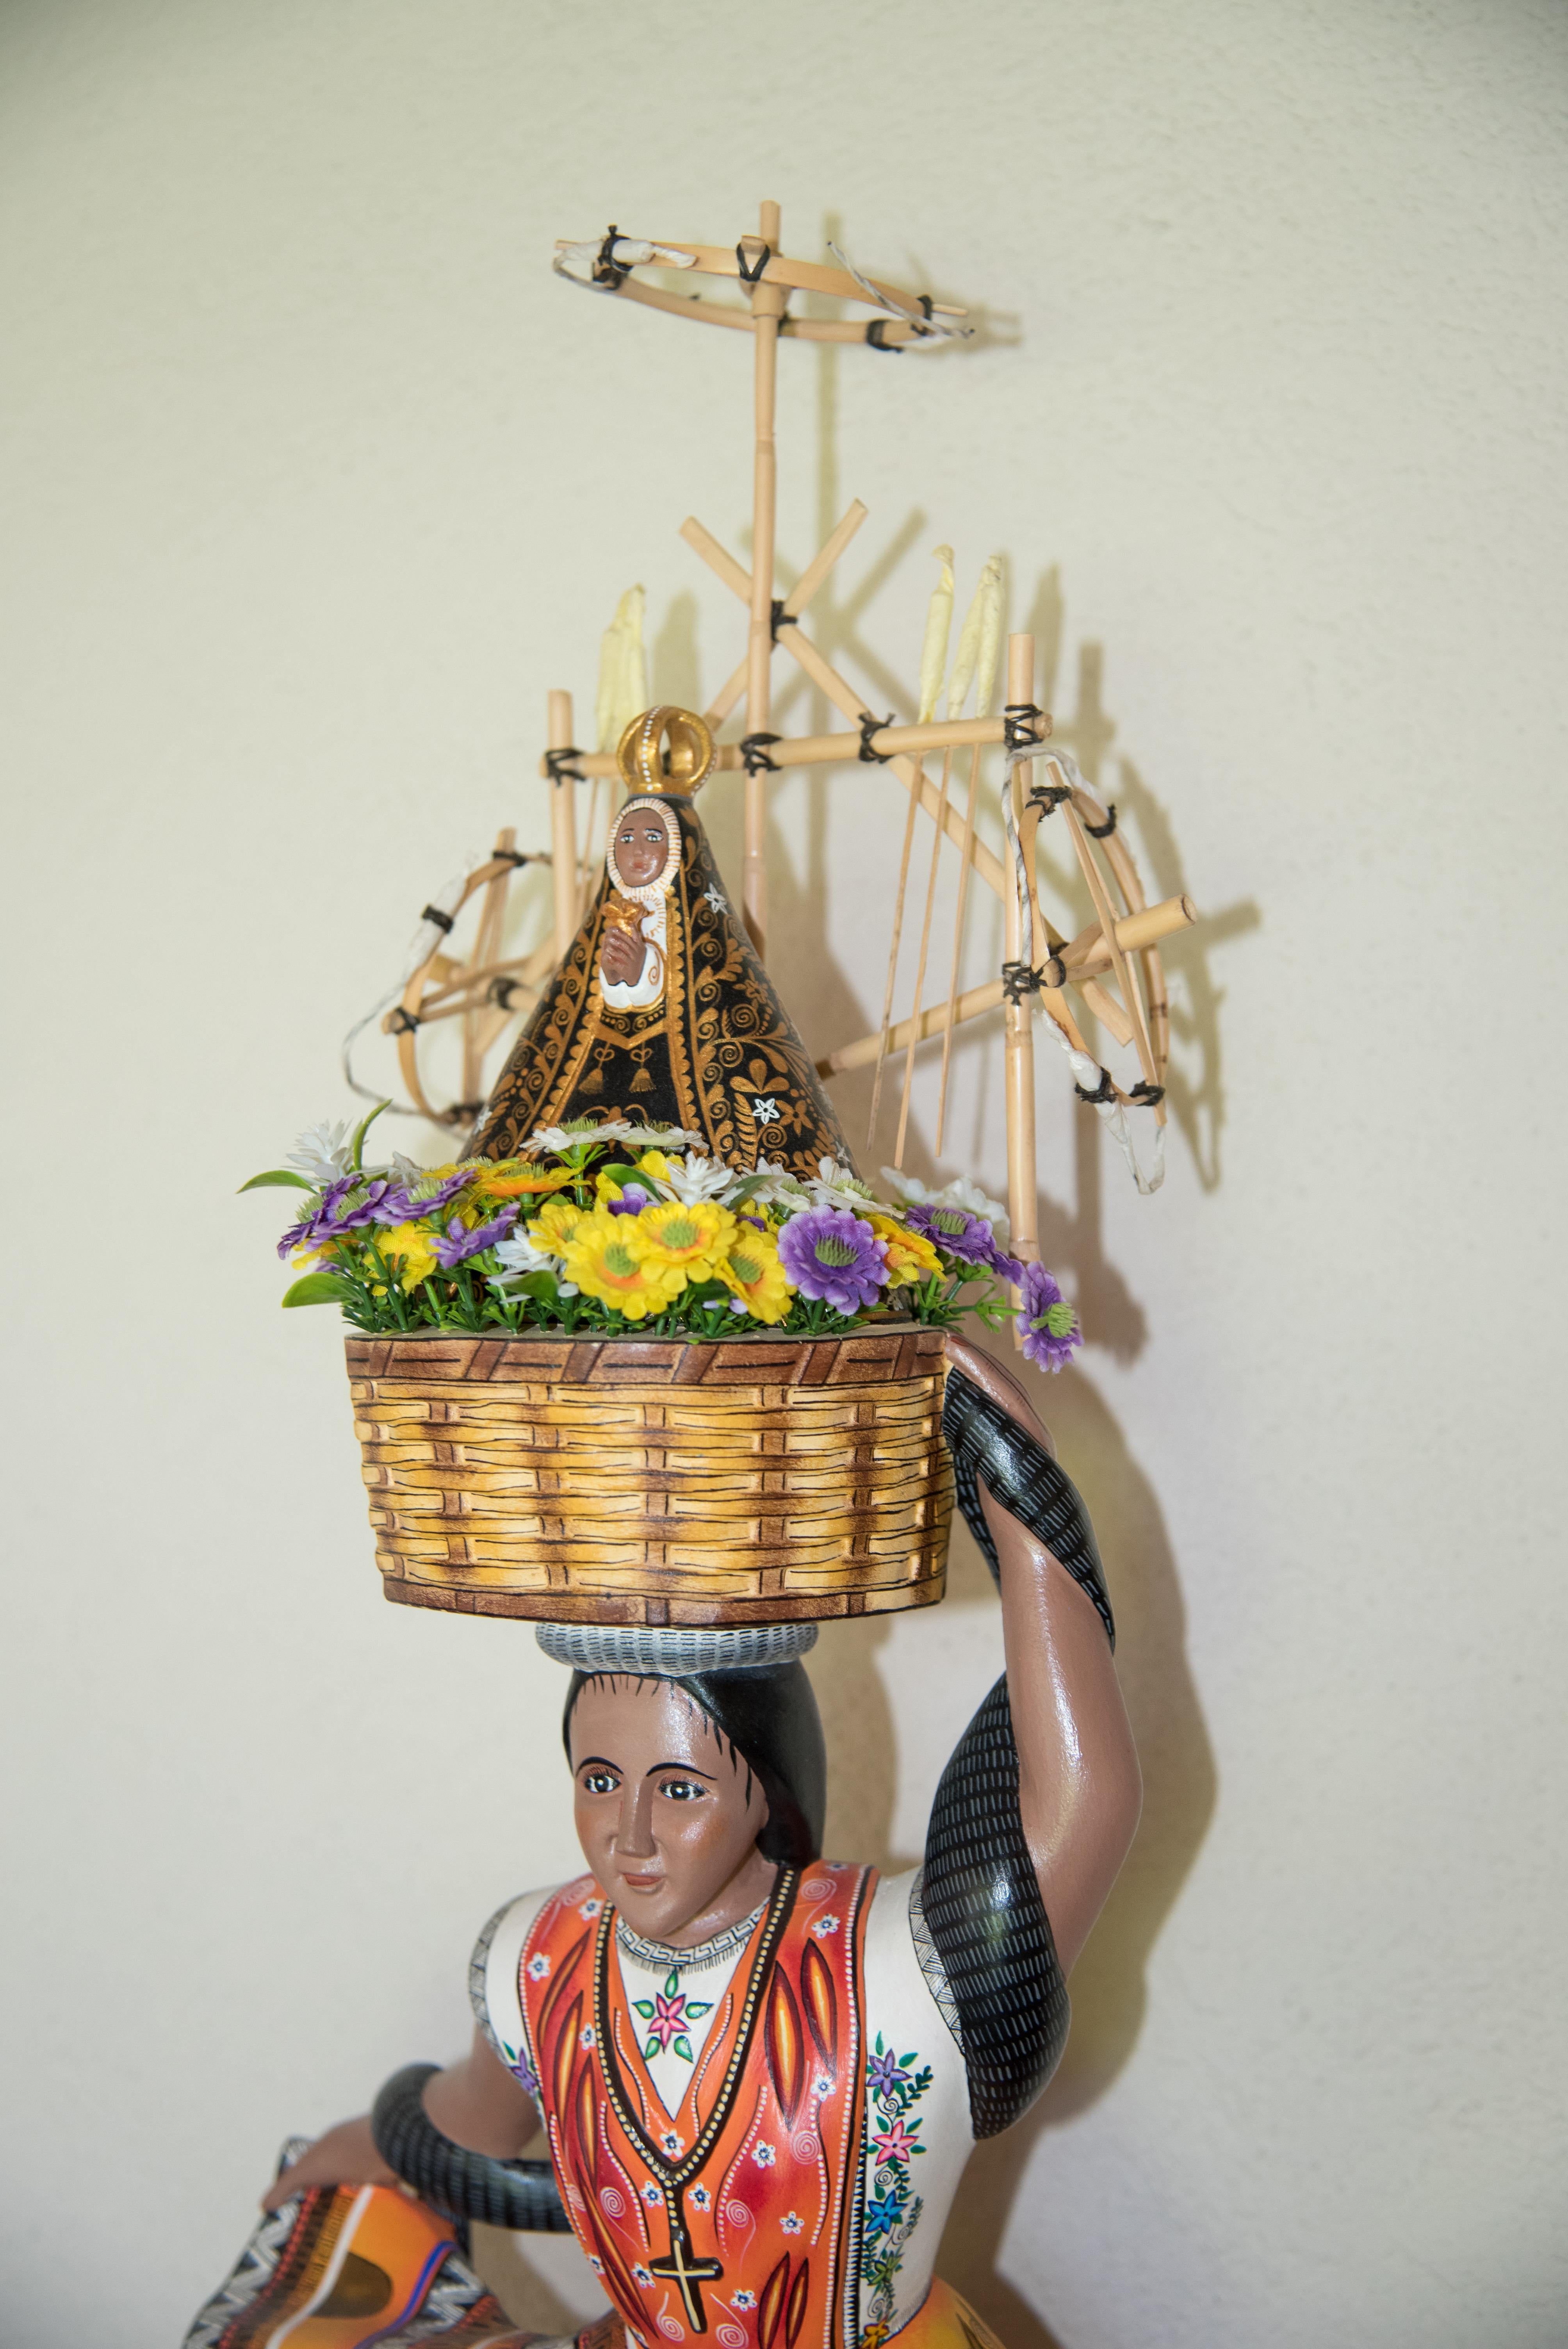 Dieses einzigartige Stück von Meisterhandwerkern, dem Ehepaar Manuel und Ruby Cruz, ist das Ergebnis einer lebenslangen Hingabe an die Kunst der Holzschnitzerei. Schöne Volkskunst-Skulptur des traditionellen Guelaguetza-Festtanzes. 

MATERIAL und